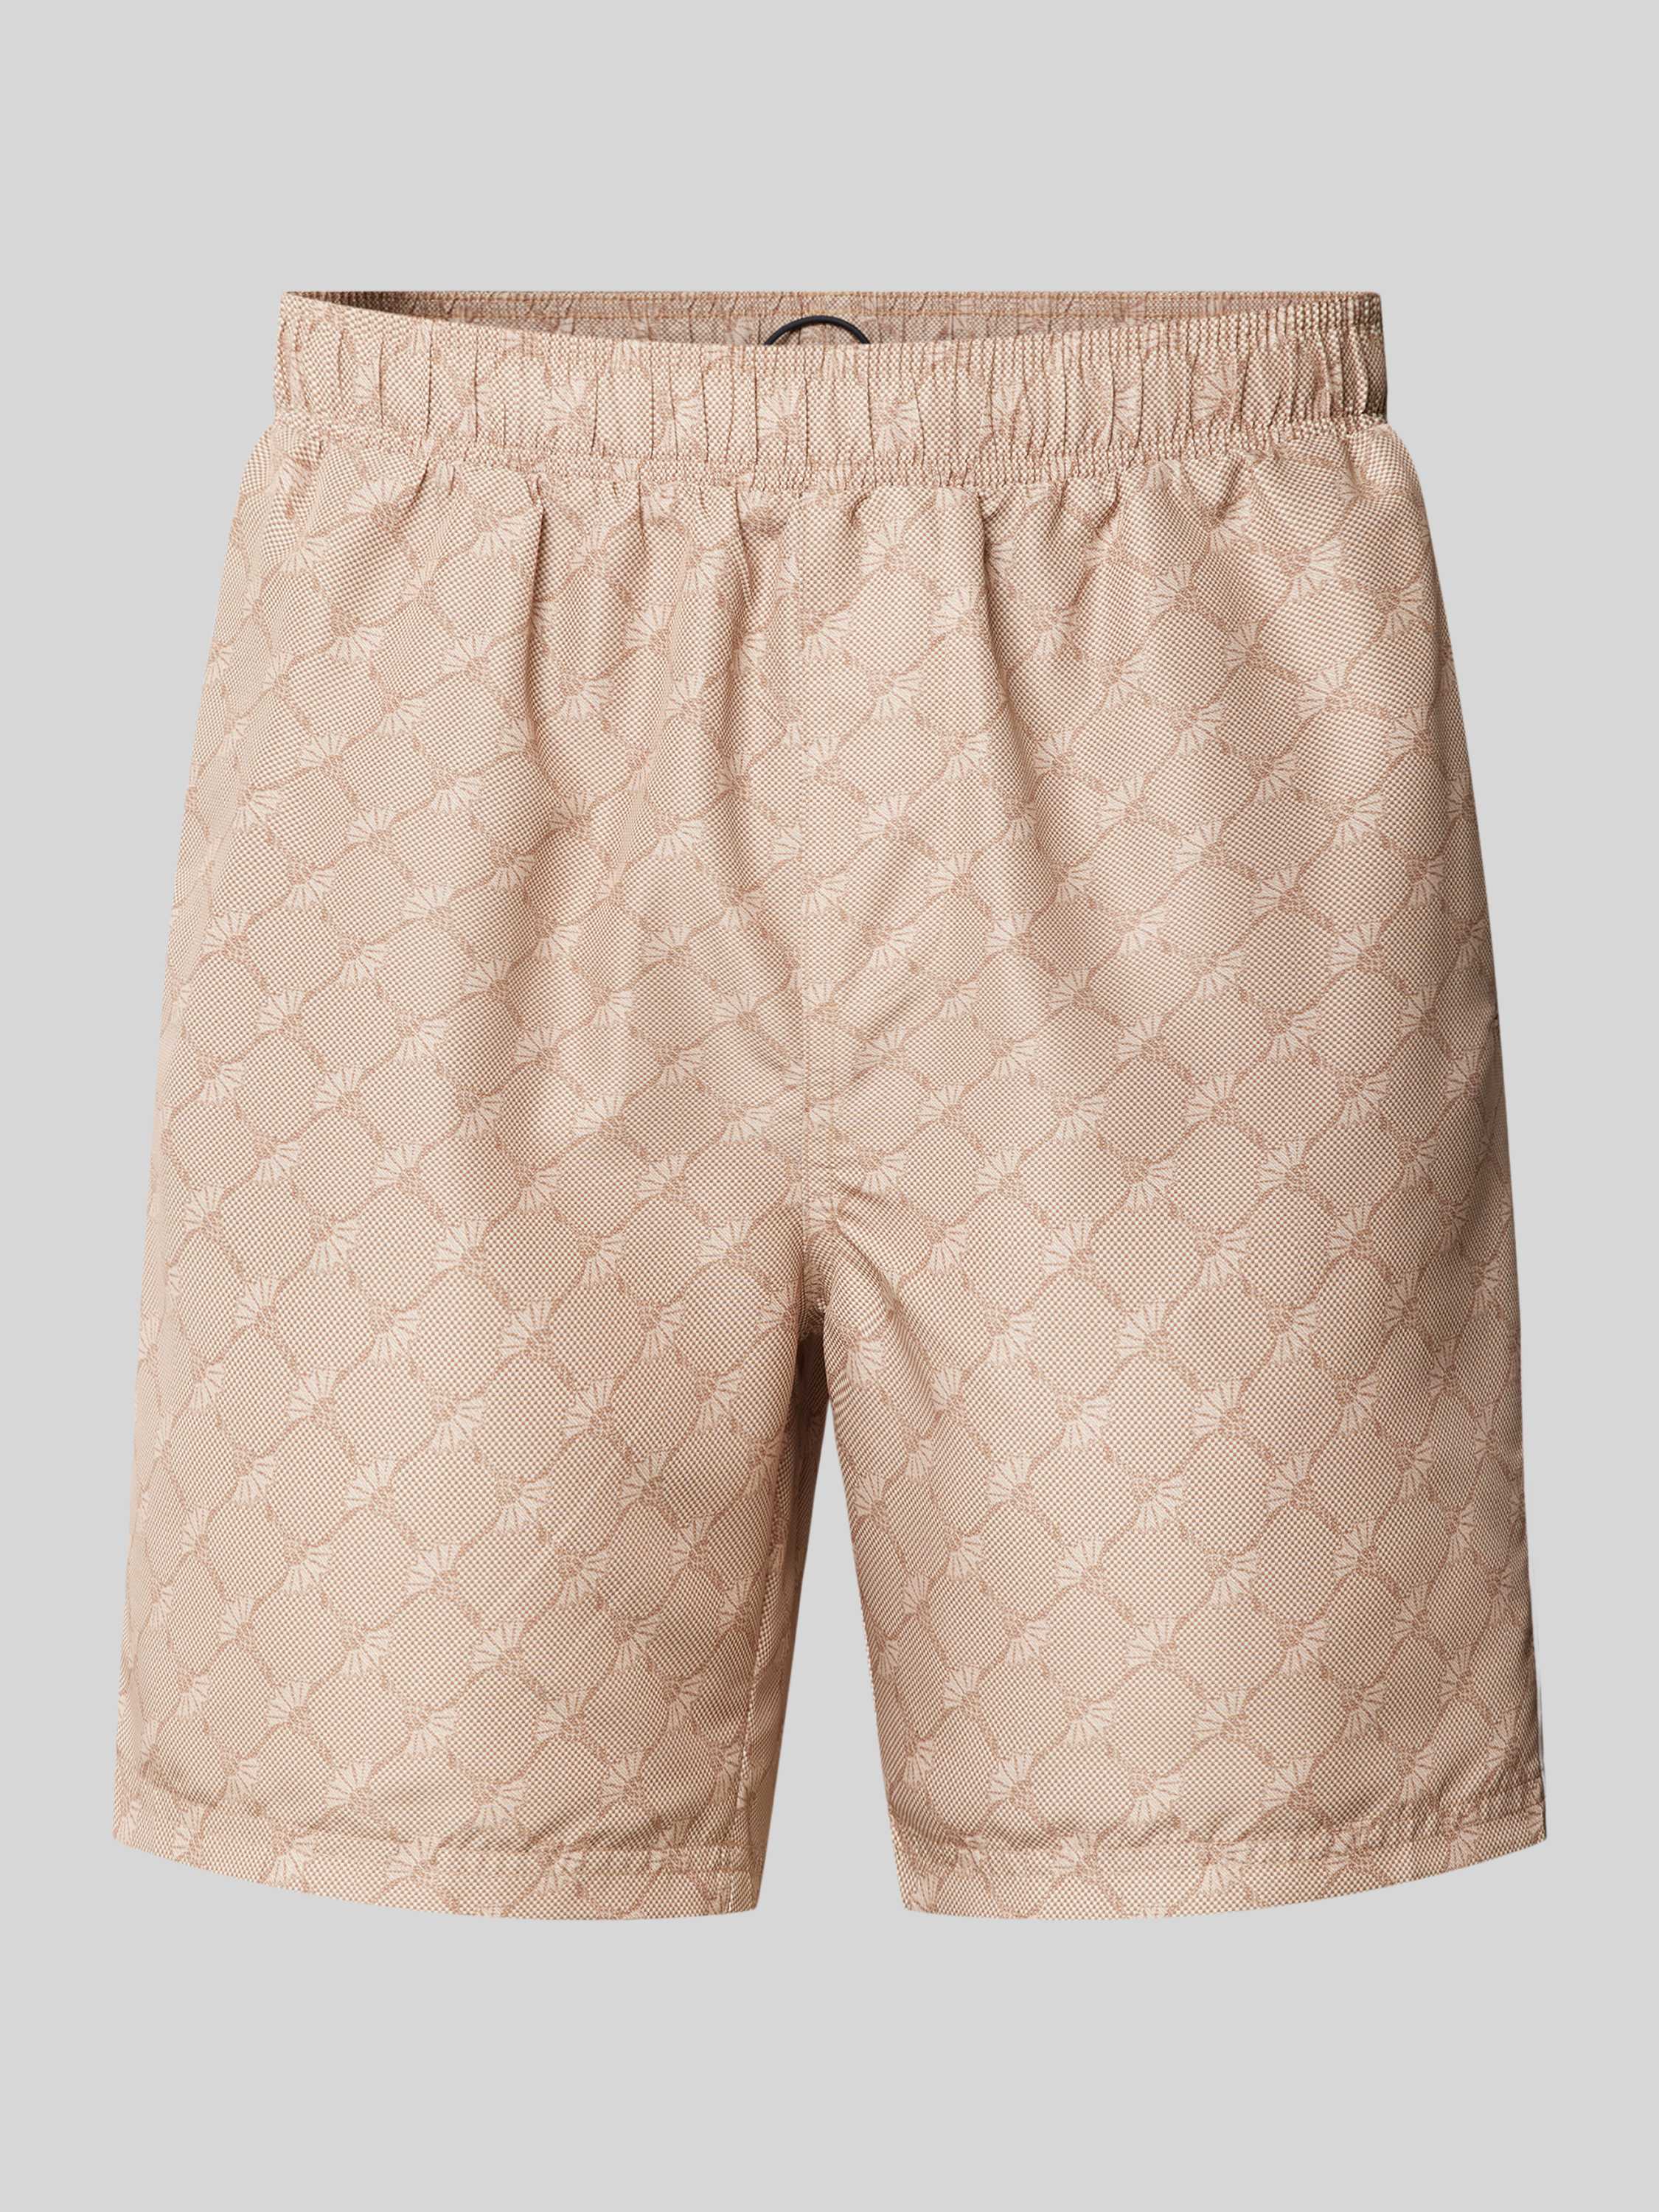 Shorts mit seitlichen Eingrifftaschen Modell 'St.Tropez'